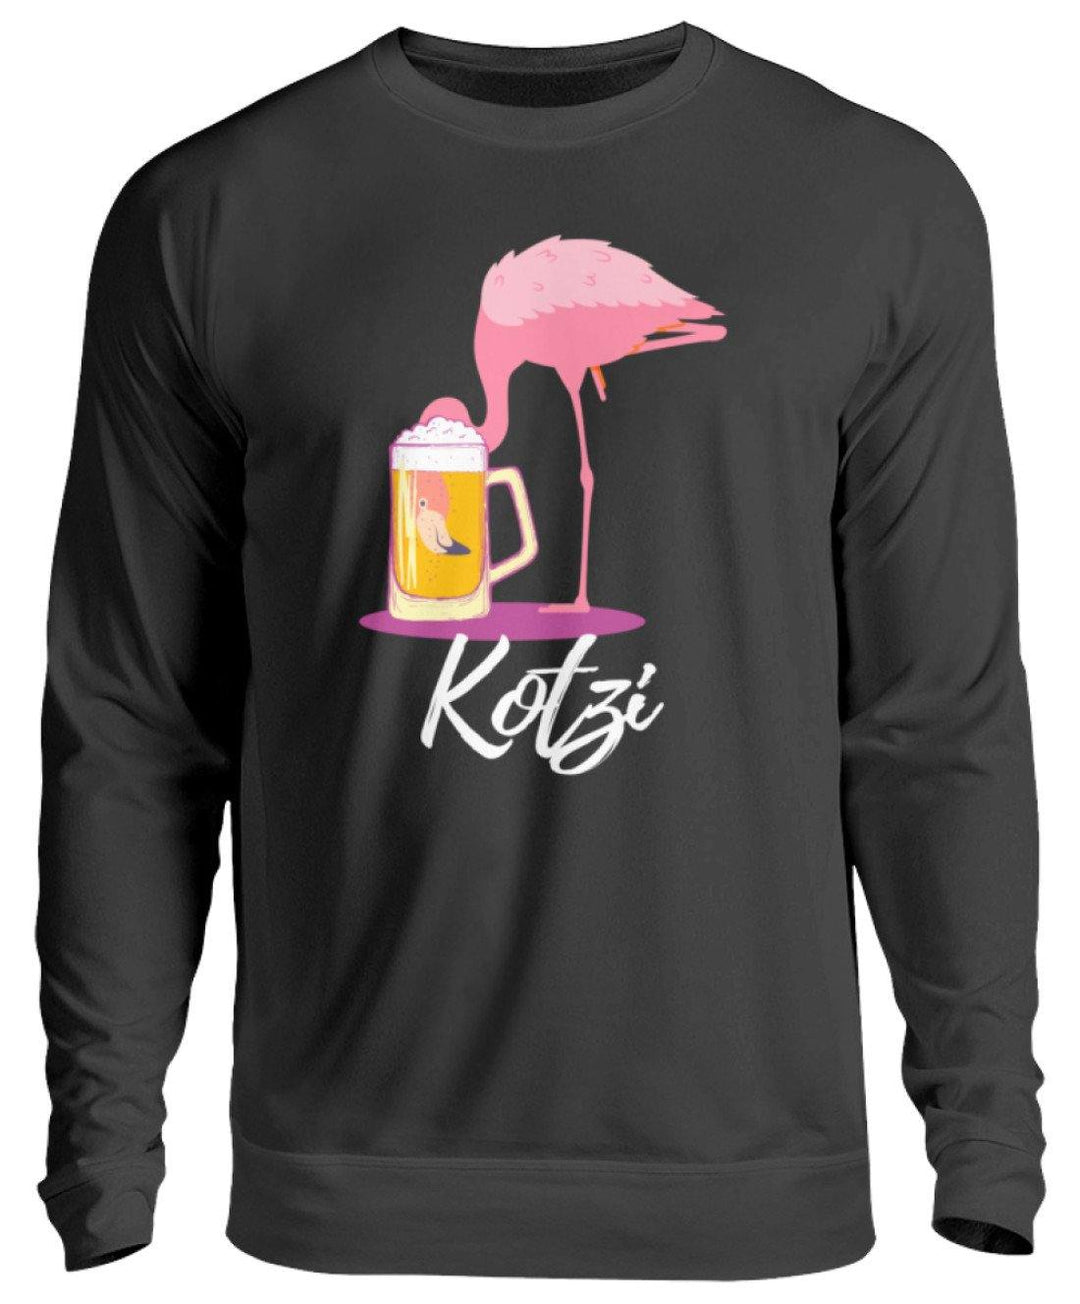 Flamingo Kotzi - Words on Shirt  - Unisex Pullover - Words on Shirts Sag es mit dem Mittelfinger Shirts Hoodies Sweatshirt Taschen Gymsack Spruch Sprüche Statement